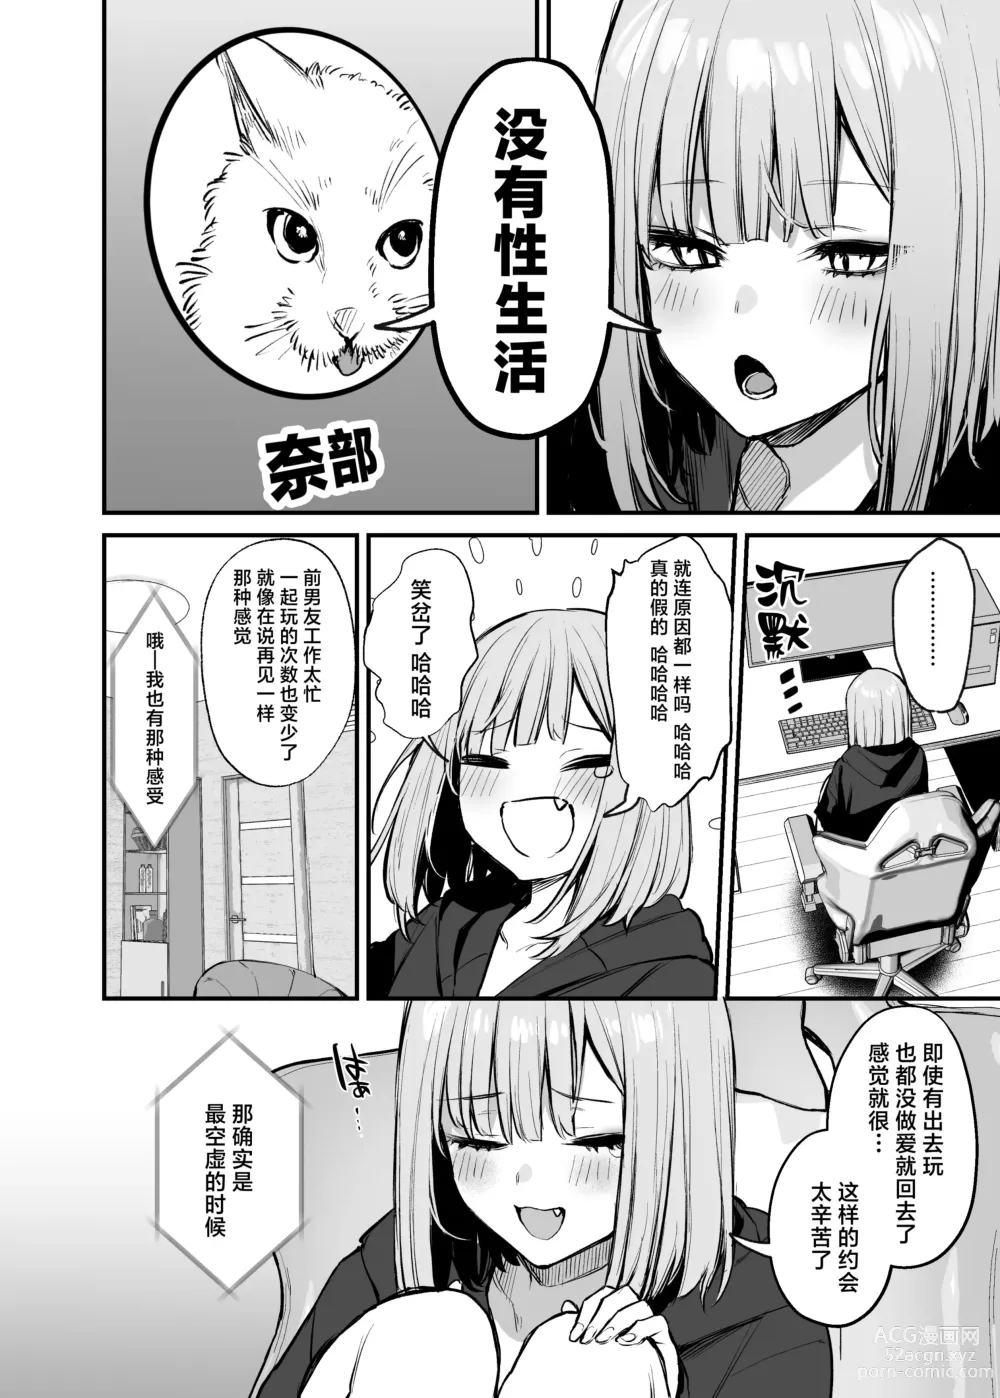 Page 7 of manga 元カレとはできなかったセックスしてもいいですか